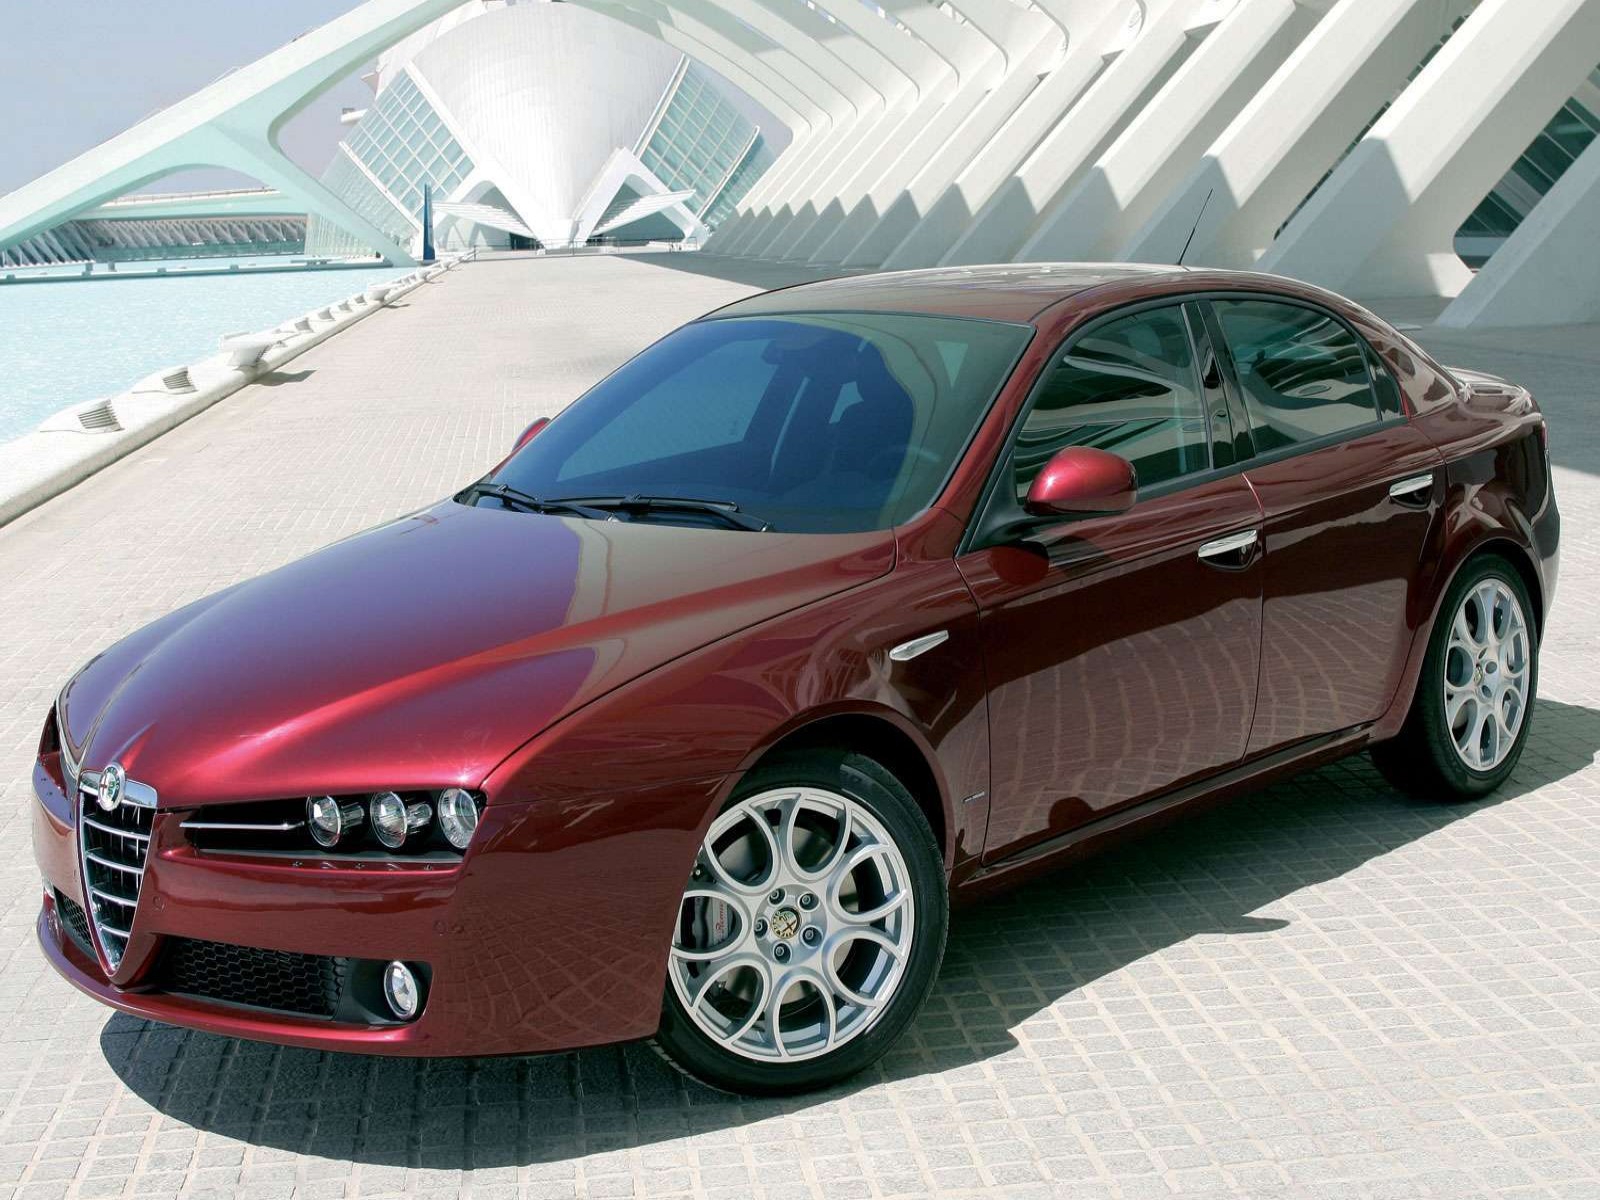 http://3.bp.blogspot.com/-t-kyOG9fBPE/Tc-0m1f-kdI/AAAAAAAAAJ8/70jJ76C89A4/s1600/2005+Alfa+Romeo+159+-+Car+Psupero+Wallpaper.jpg